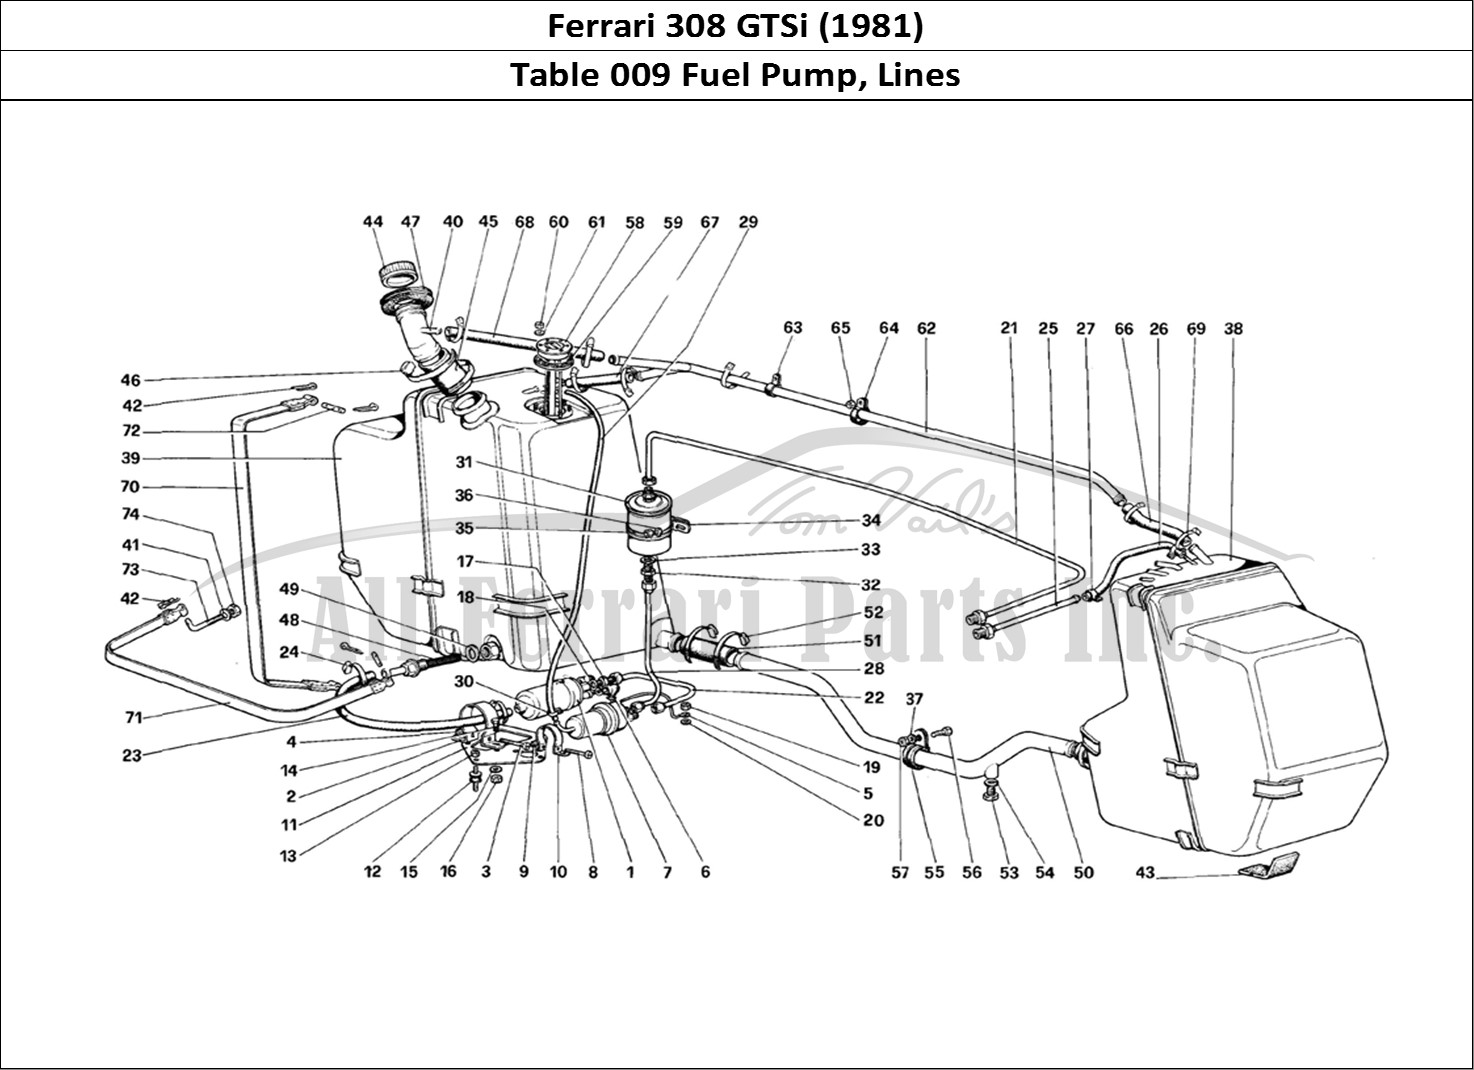 Ferrari Parts Ferrari 308 GTBi (1981) Page 009 Fuel Pump and Pipes